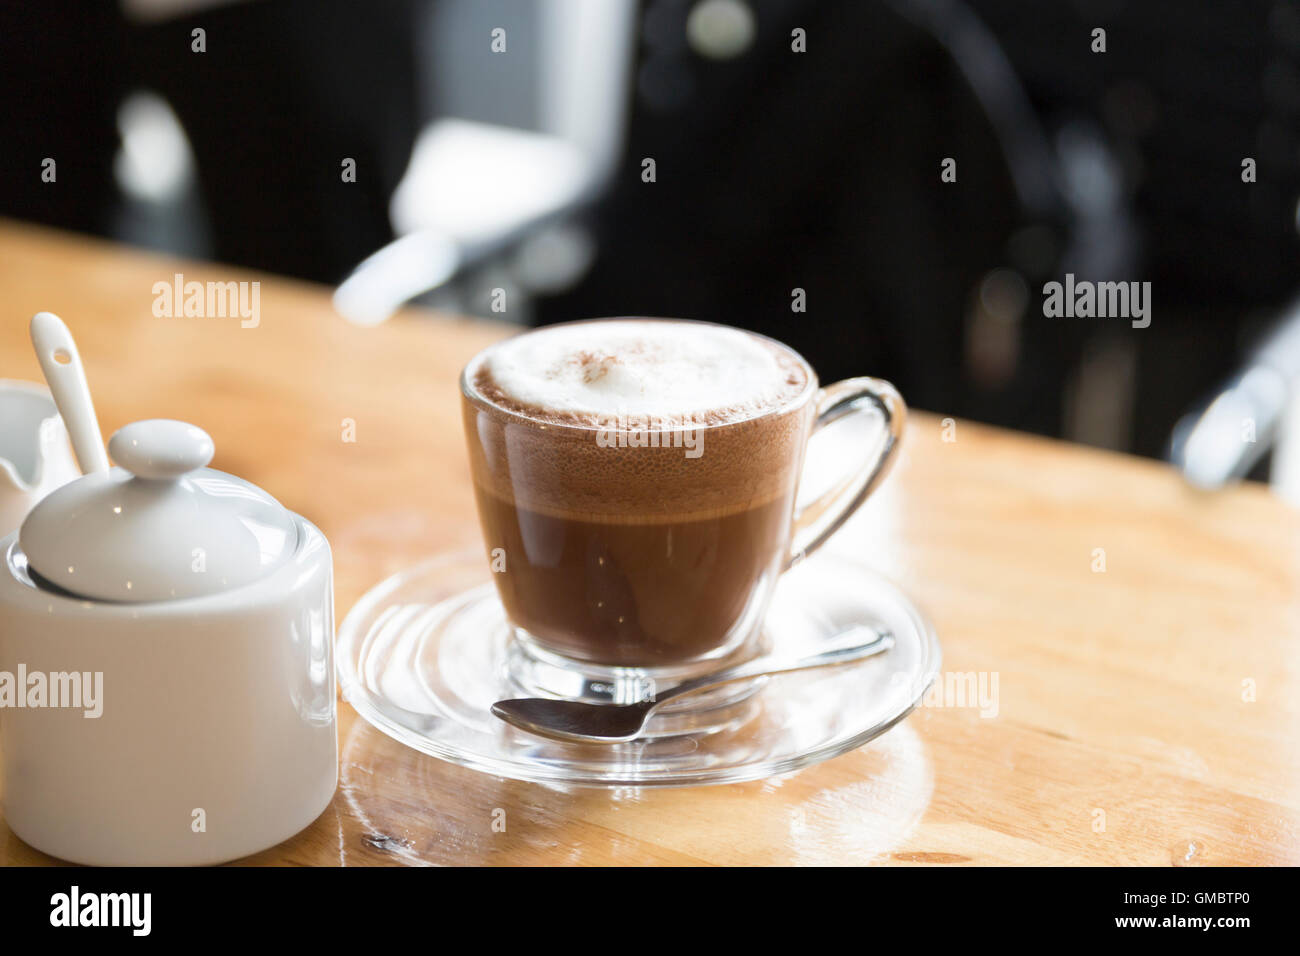 Cioccolata calda bevanda al cioccolato con zucchero e sciroppo mug sulla scrivania in legno Foto Stock